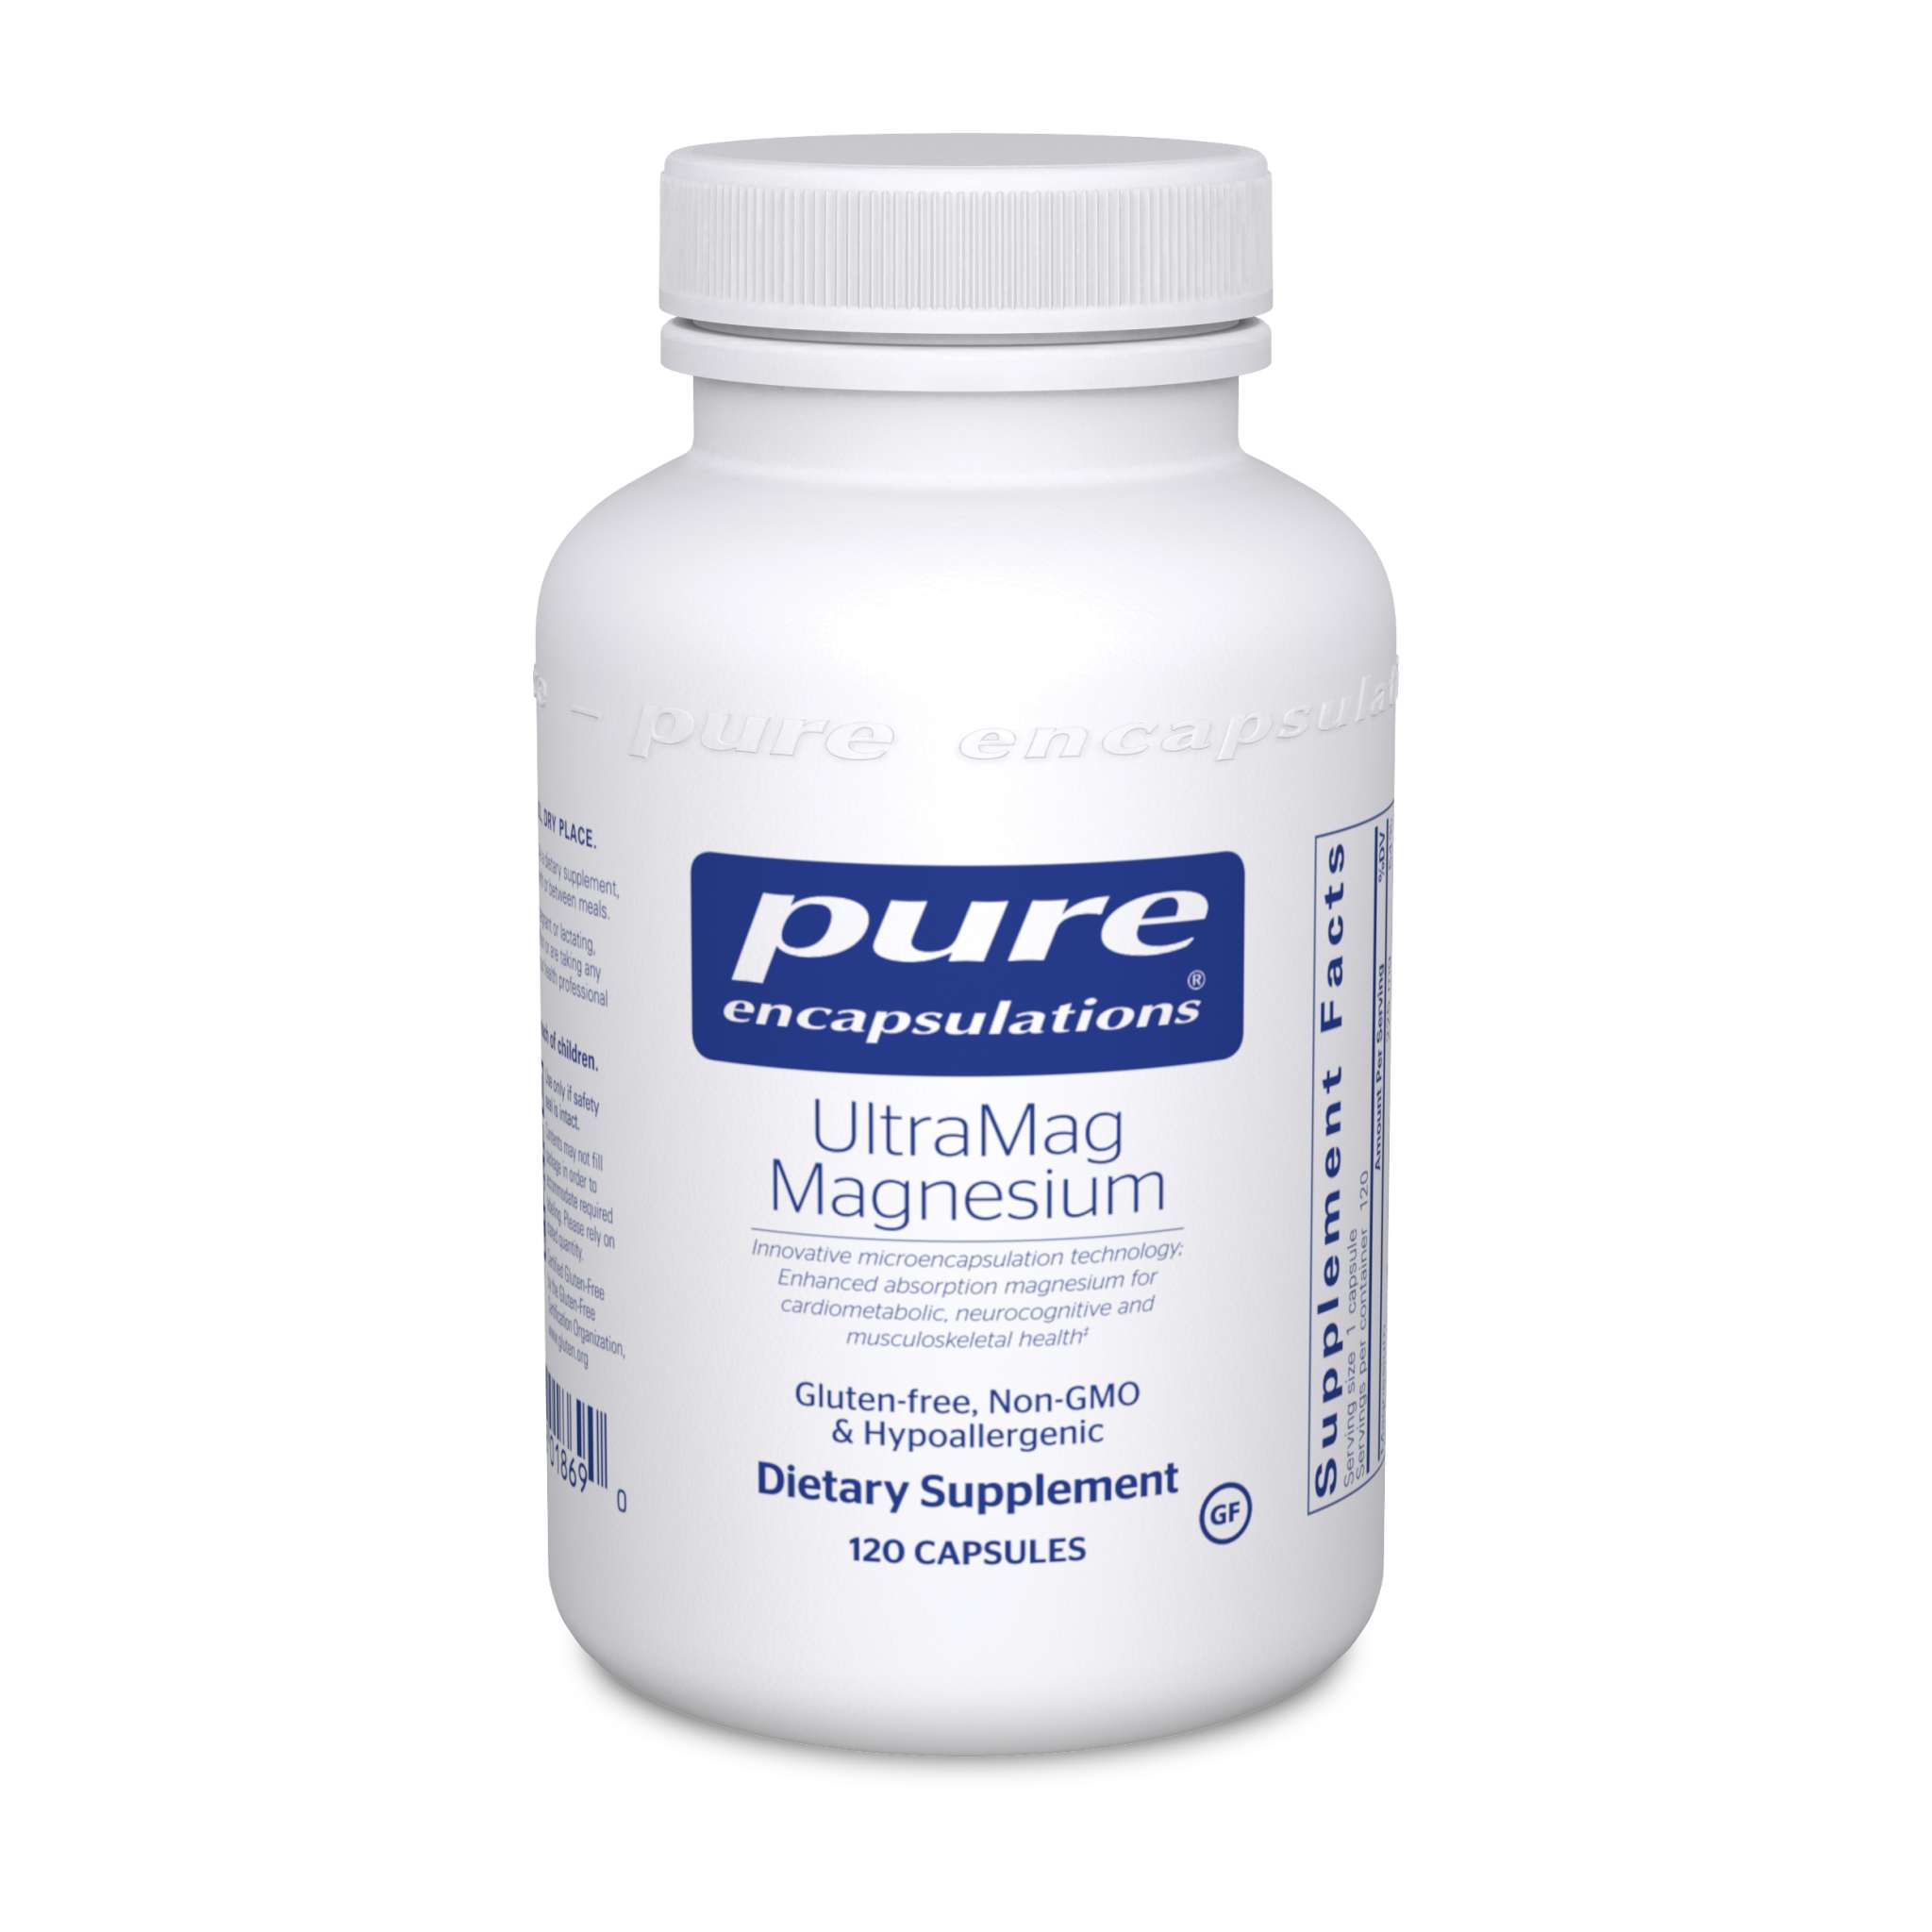 Pure Encapsulations - Ultramag Magnesium